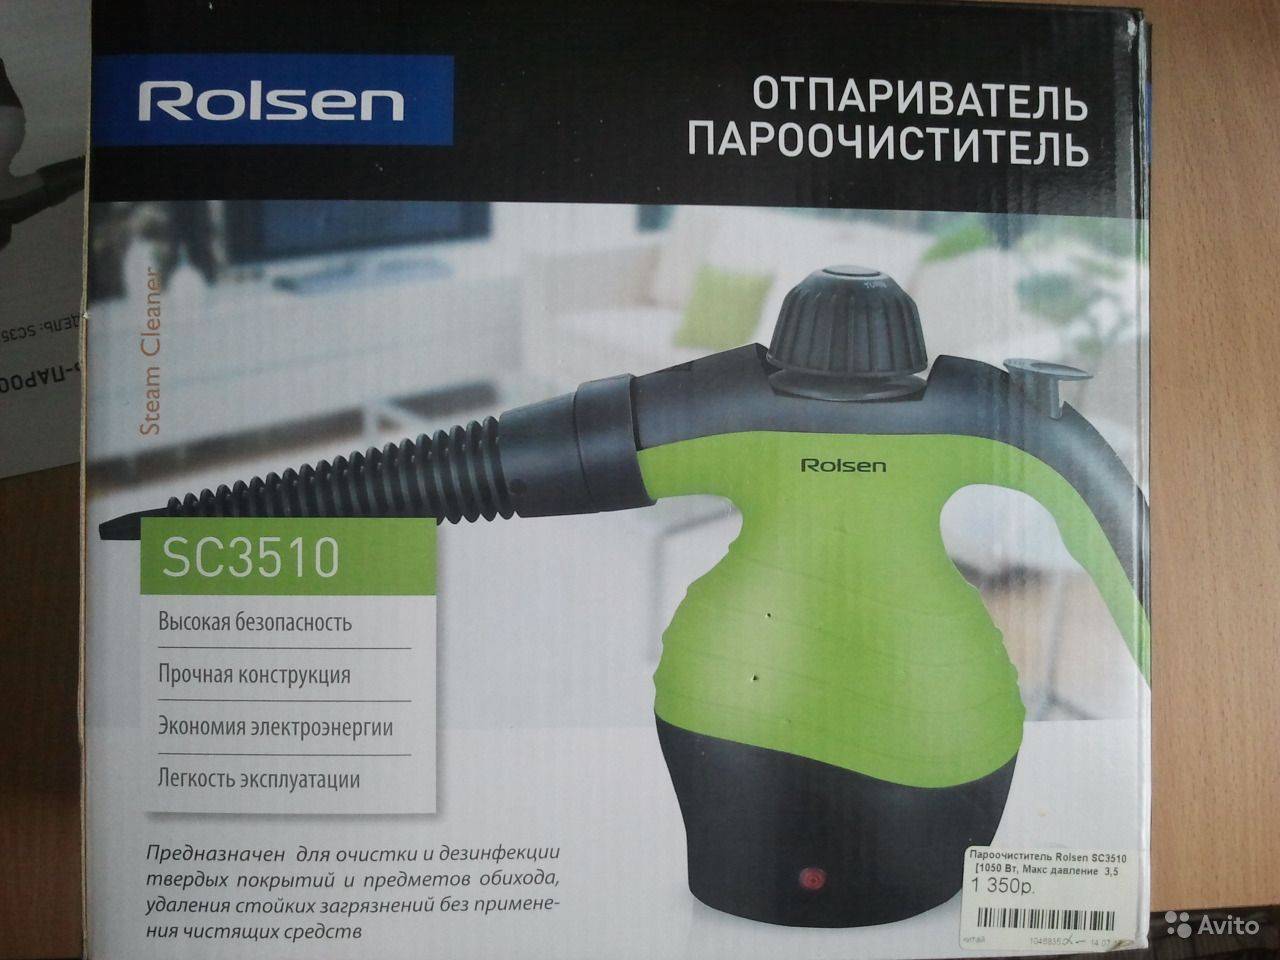 Пароочиститель поларис. Пароочиститель Rolsen sc3510.